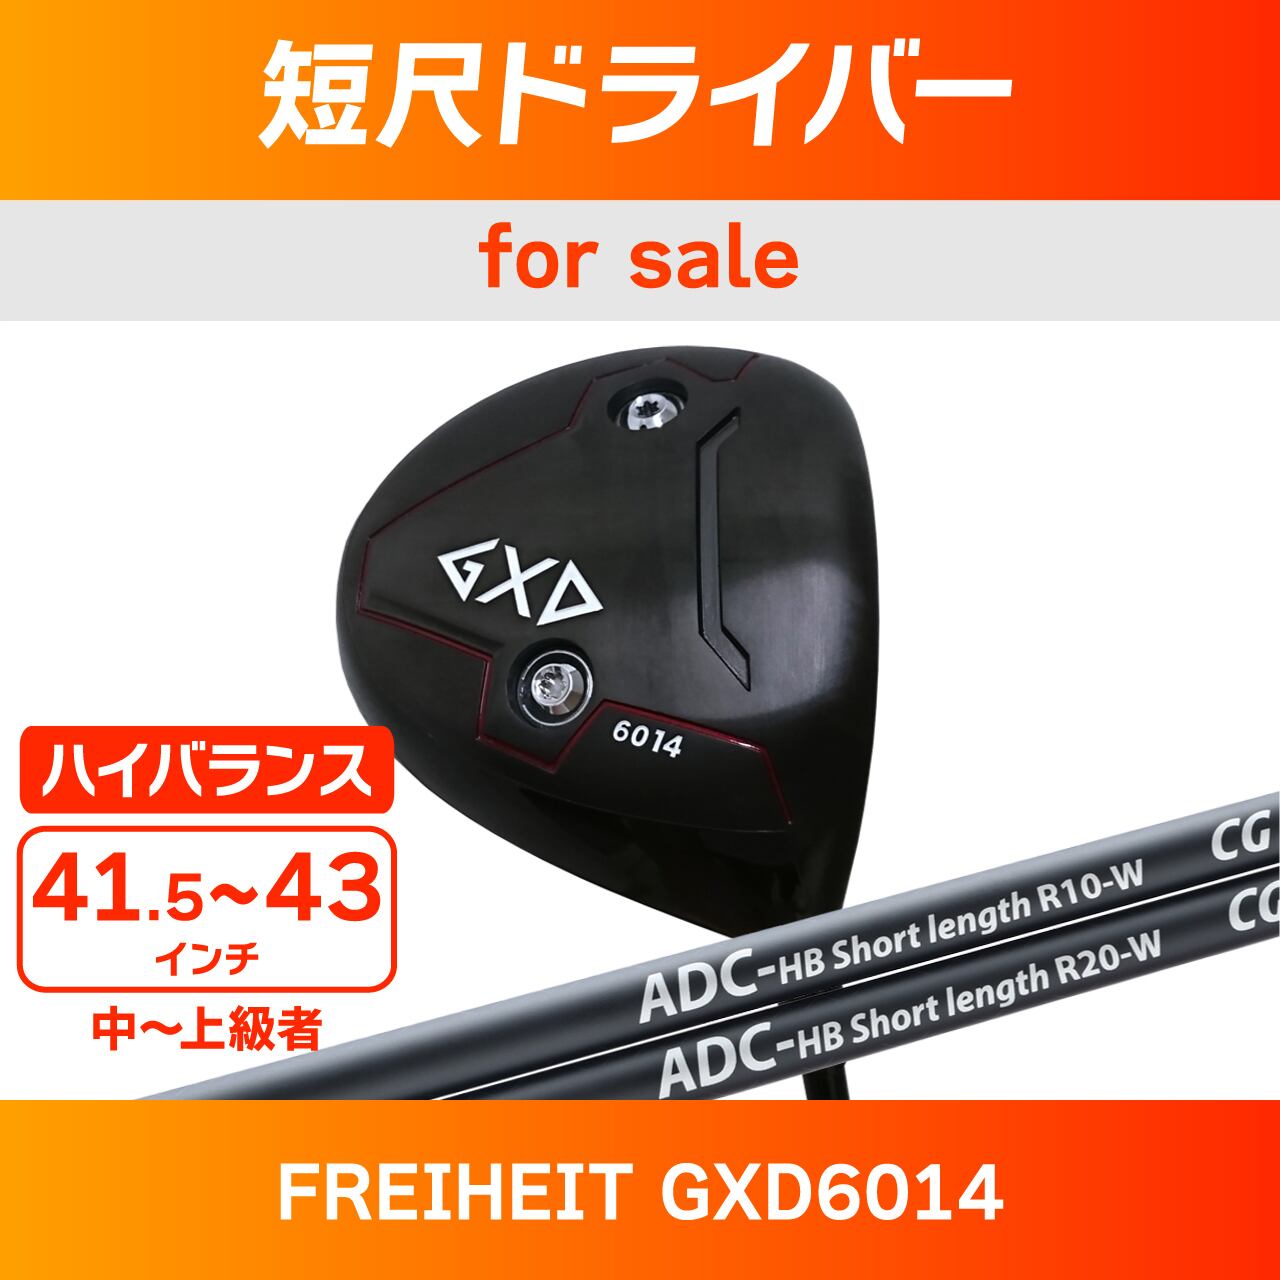 チップゴルフ ADC-01 F0 36.0インチ用